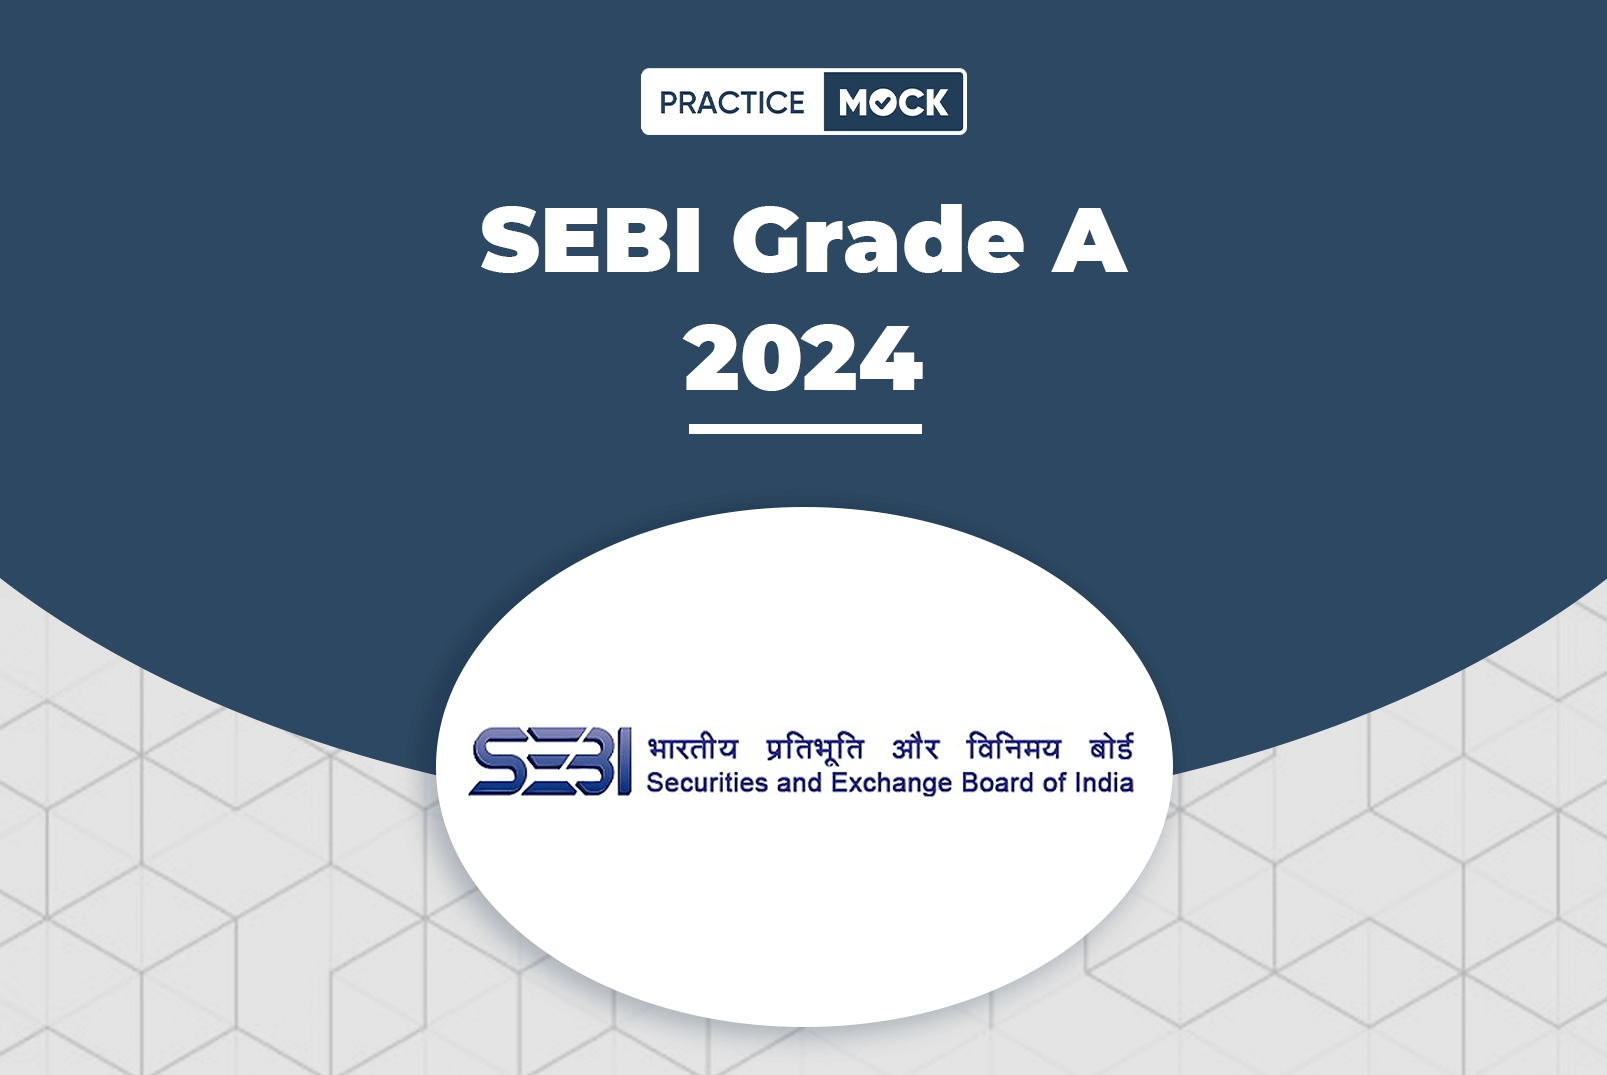 SEBI Grade A 2024